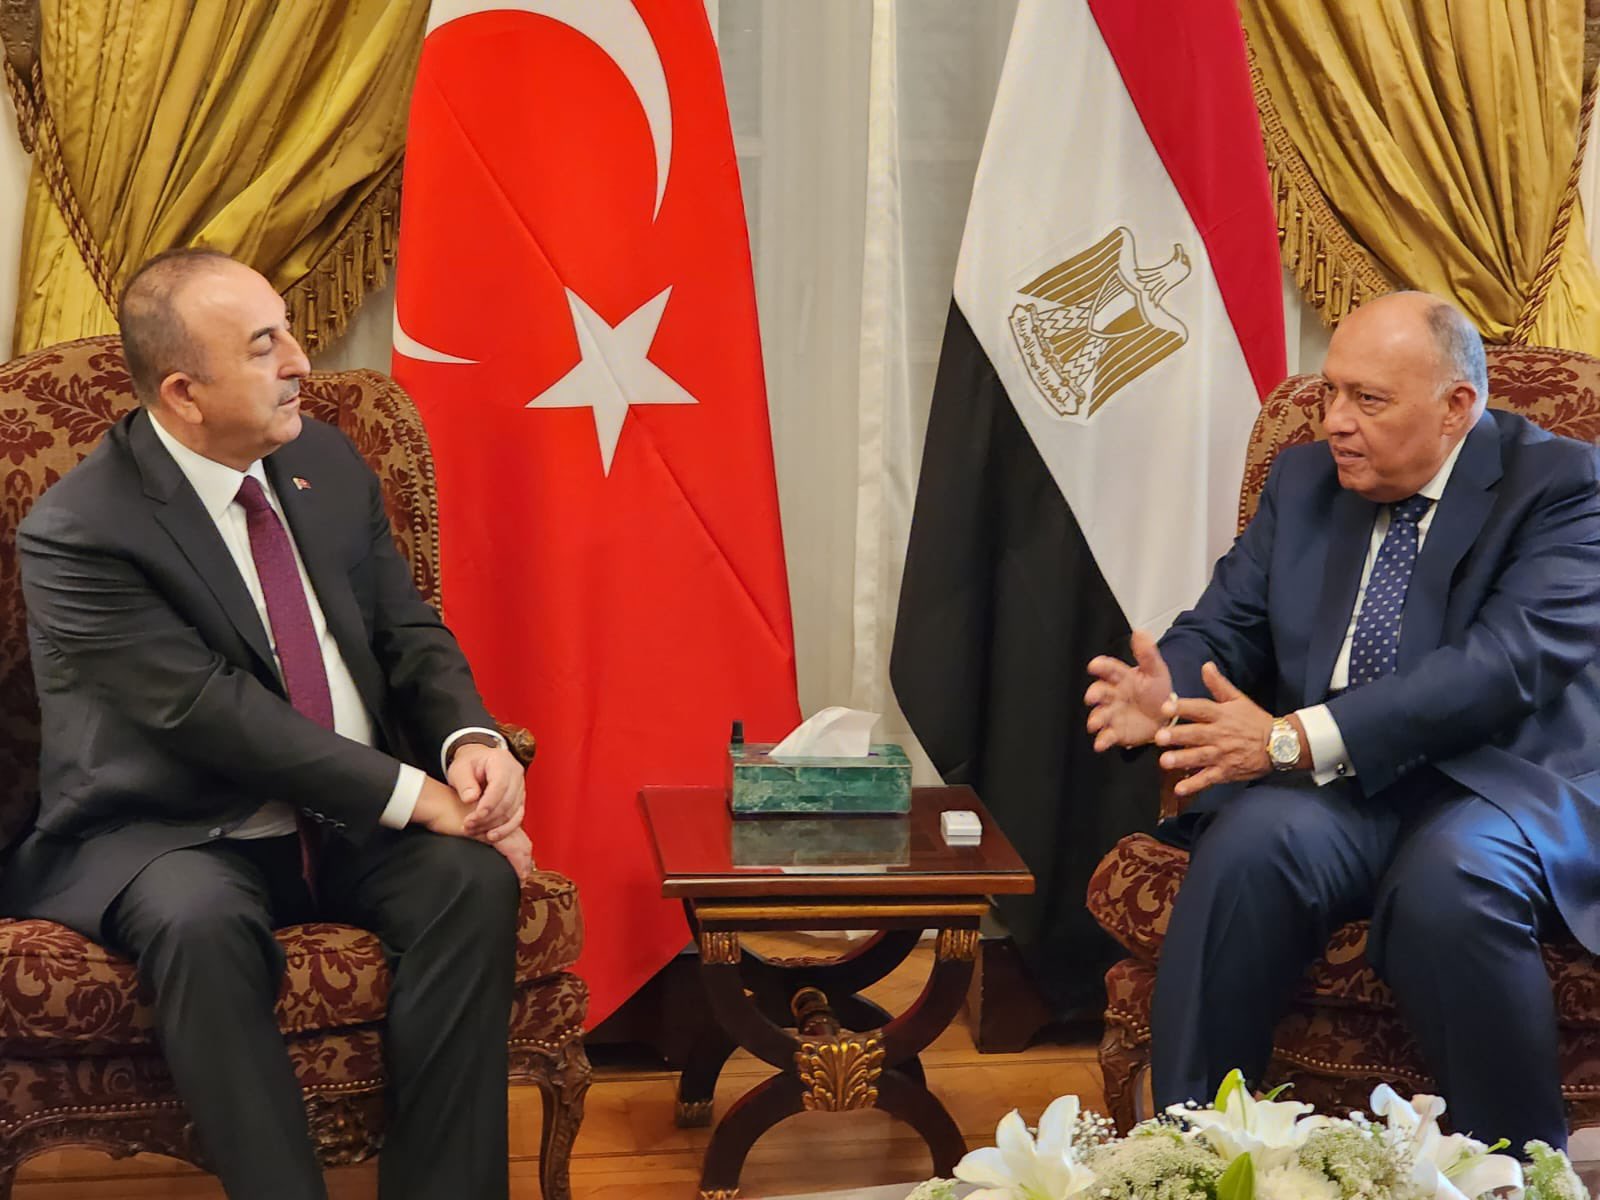 Video: Türk Dışişleri Bakanı, Mısır-Türkiye ilişkilerinin güçlü olduğunu söylüyor